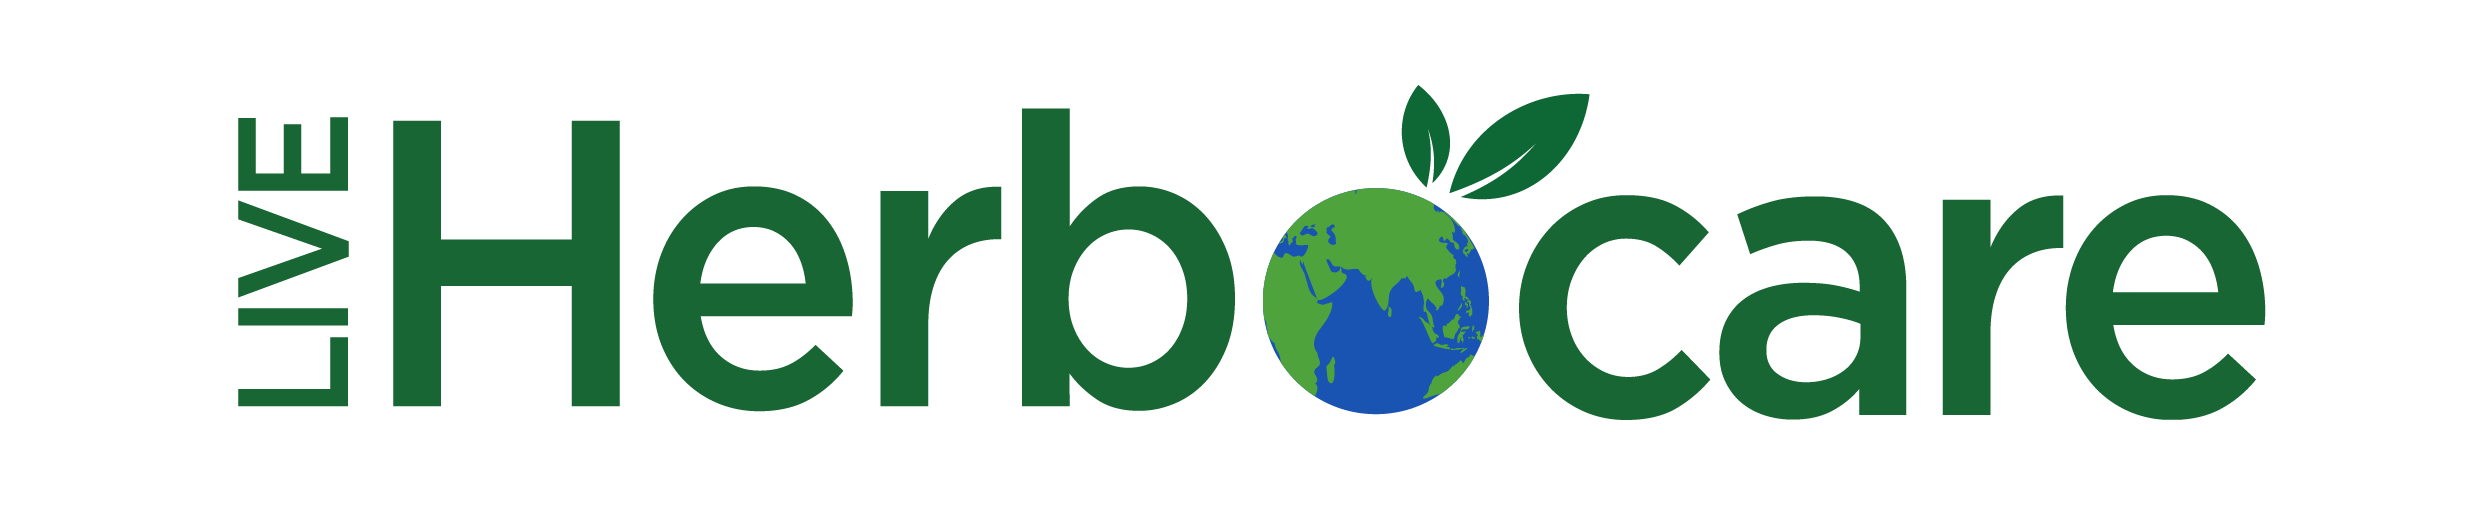 Herbocare-naturals logo